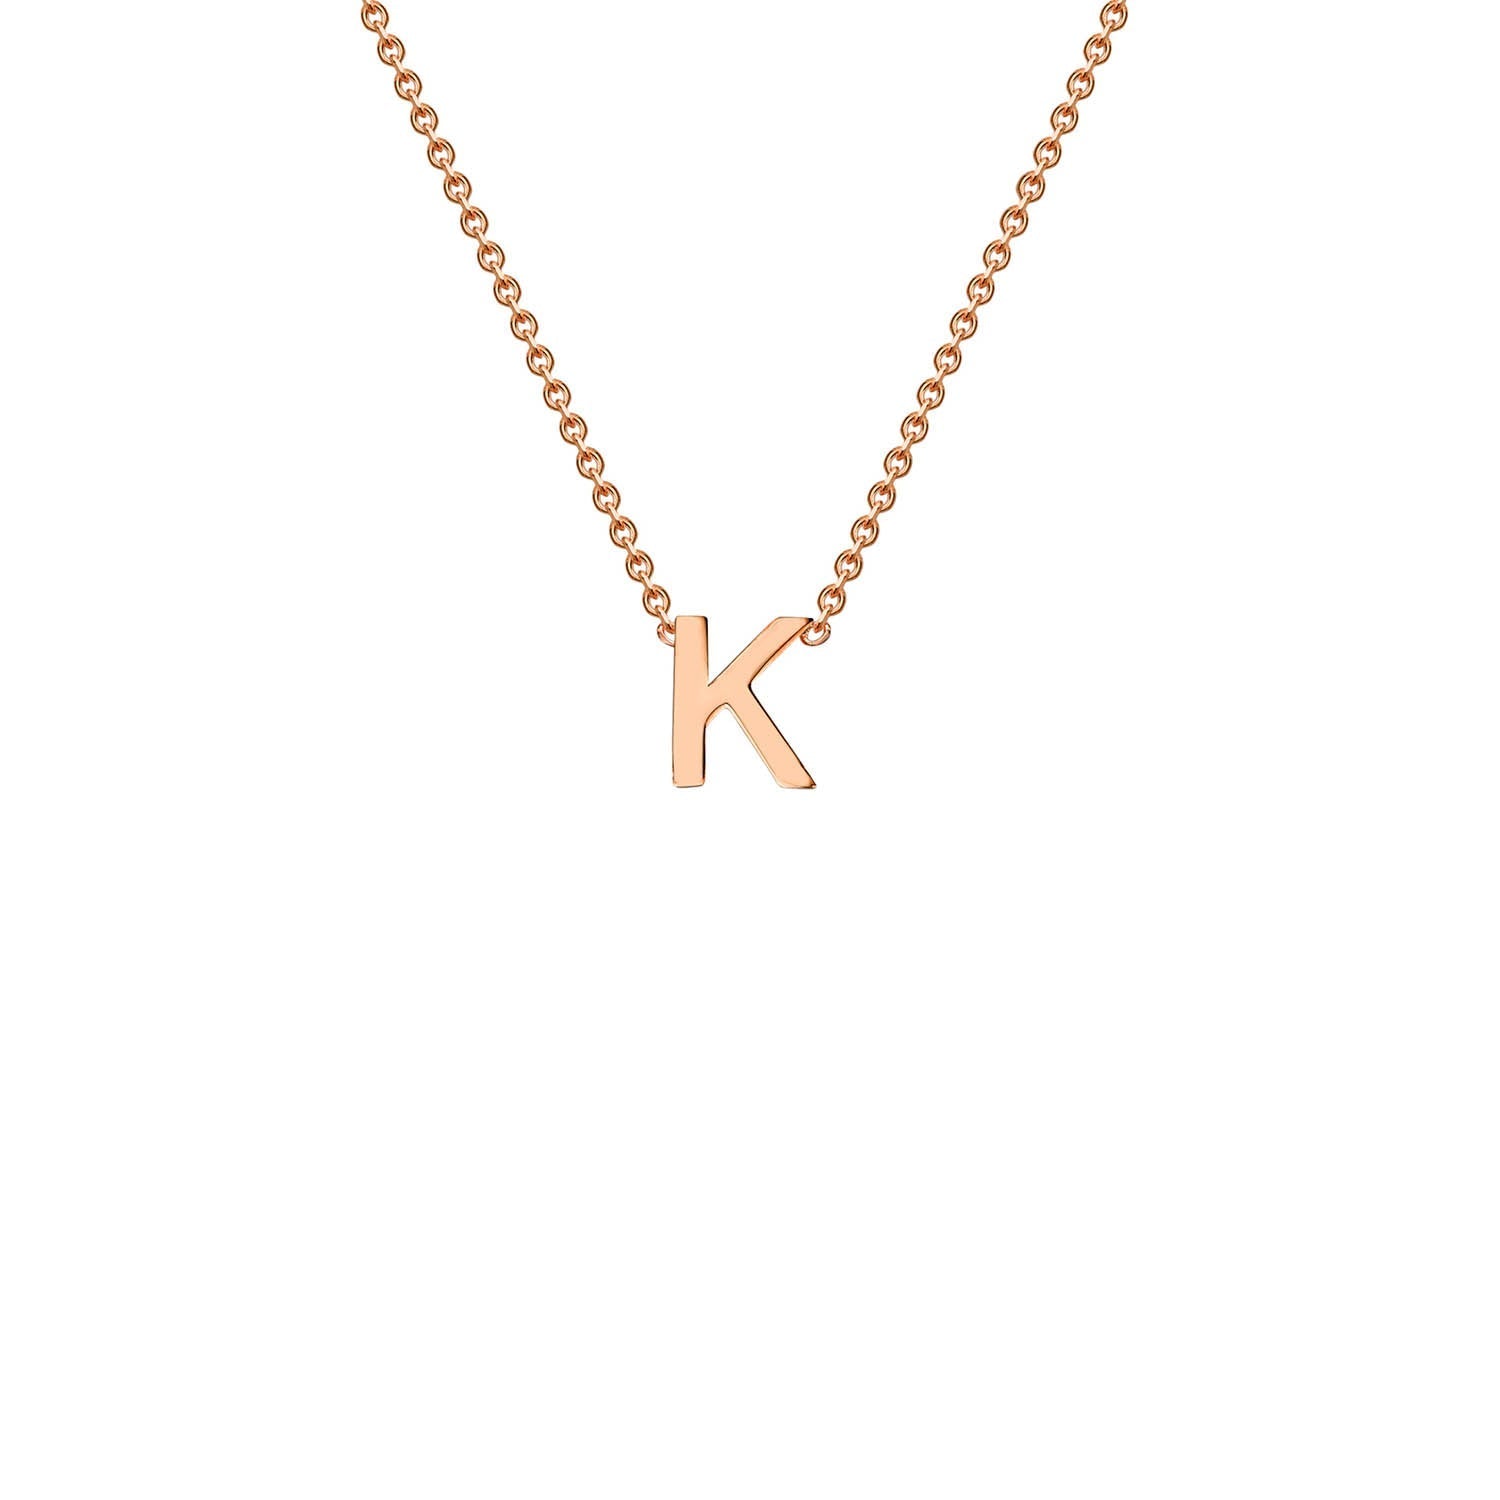 9ct Rose Gold 'K' Initial Adjustable Letter Necklace 38/43cm